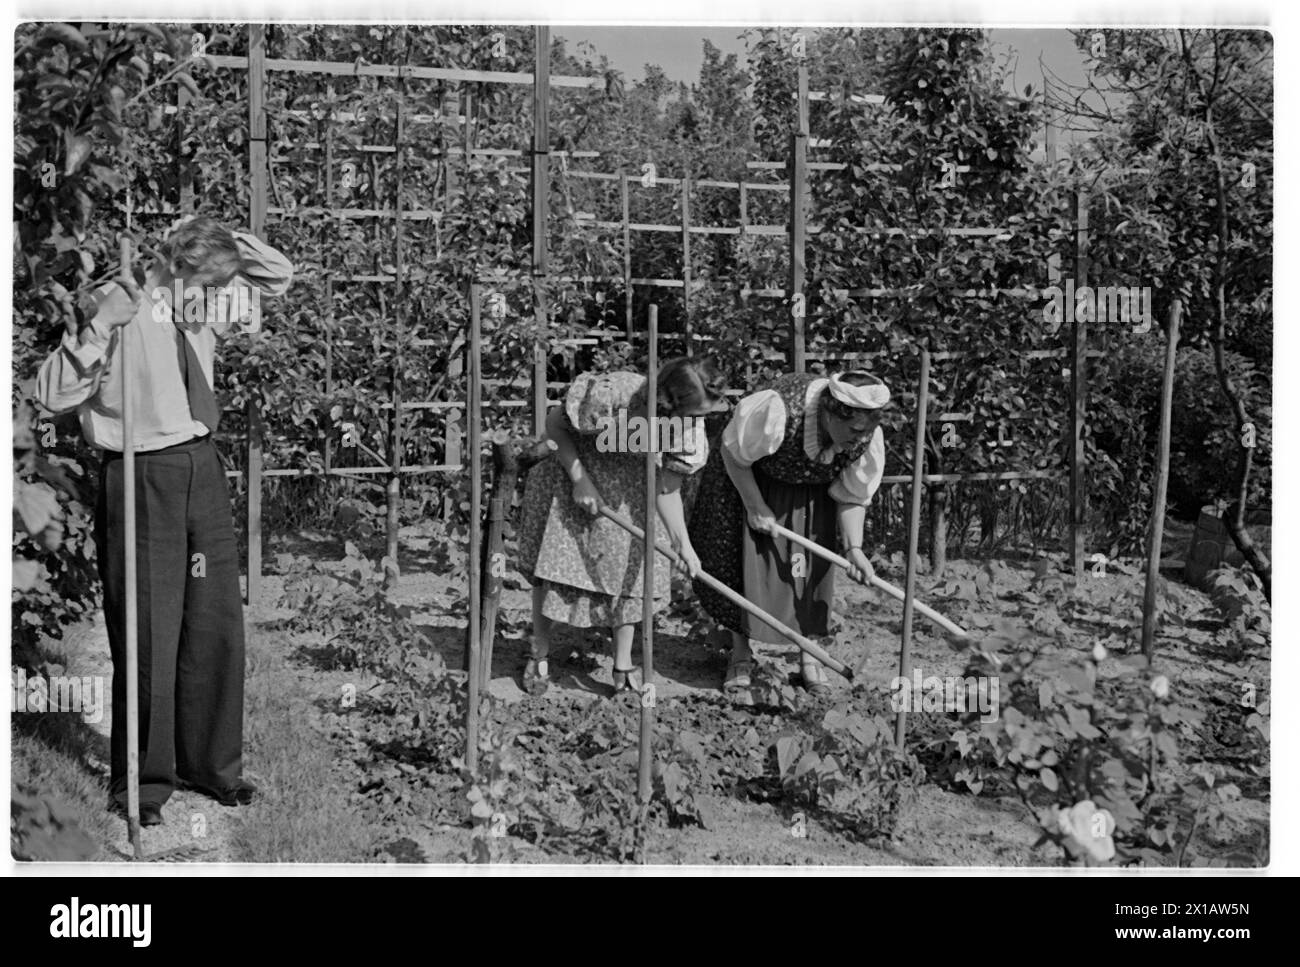 Annie Rosar nel giardino dell'allotment, sul giardinaggio. - 19400624 PD0013 - Rechteinfo: Diritti gestiti (RM) Foto Stock